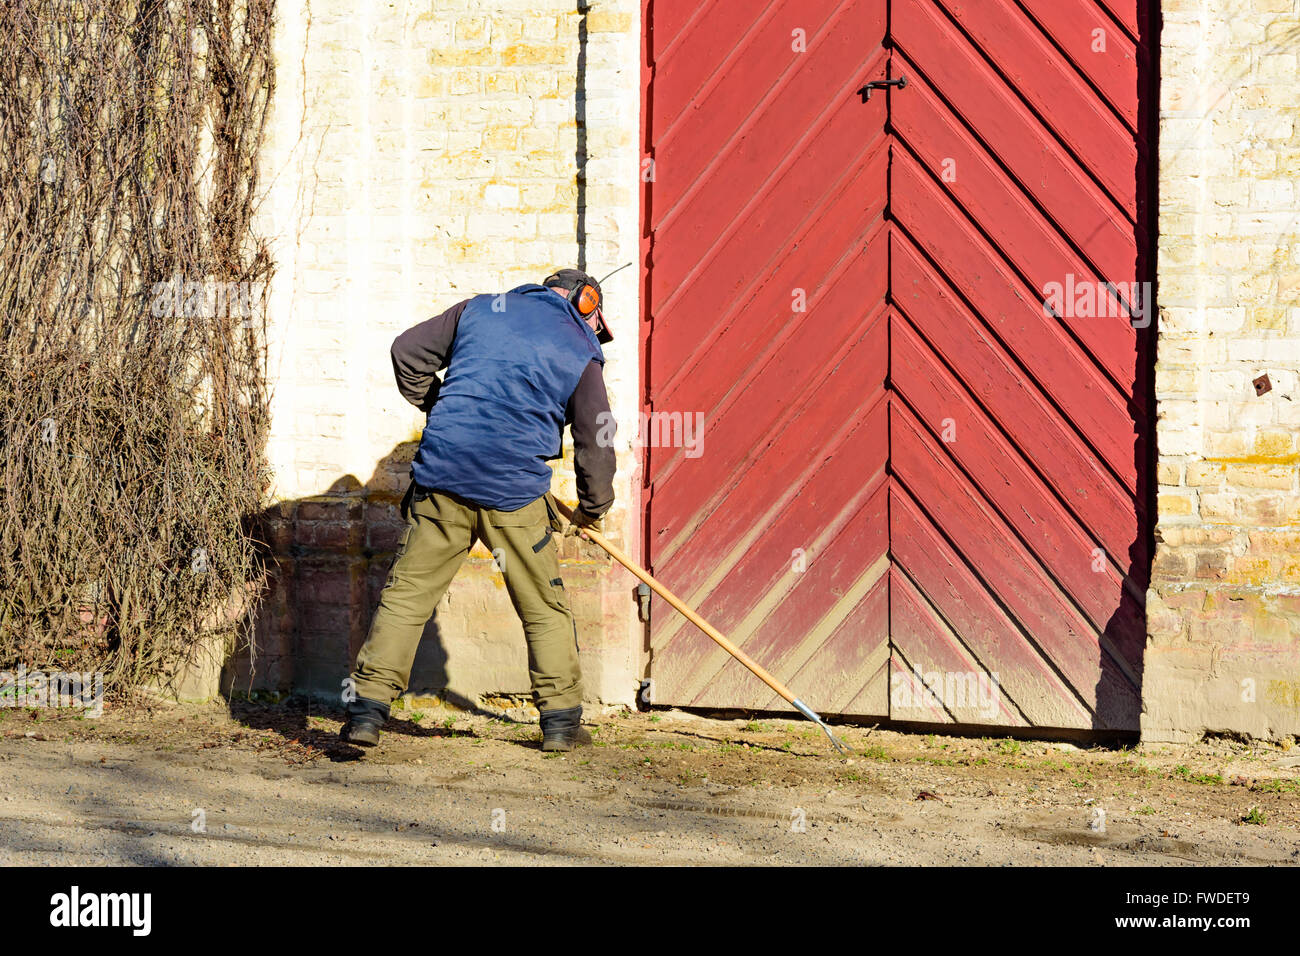 Vittskovle, Schweden - 1. April 2016: Mann ist eine Handgemenge Hacke außerhalb eines Gebäudes mit einem großen roten Tür verwenden. Er ist das Unkraut her entfernen Stockfoto